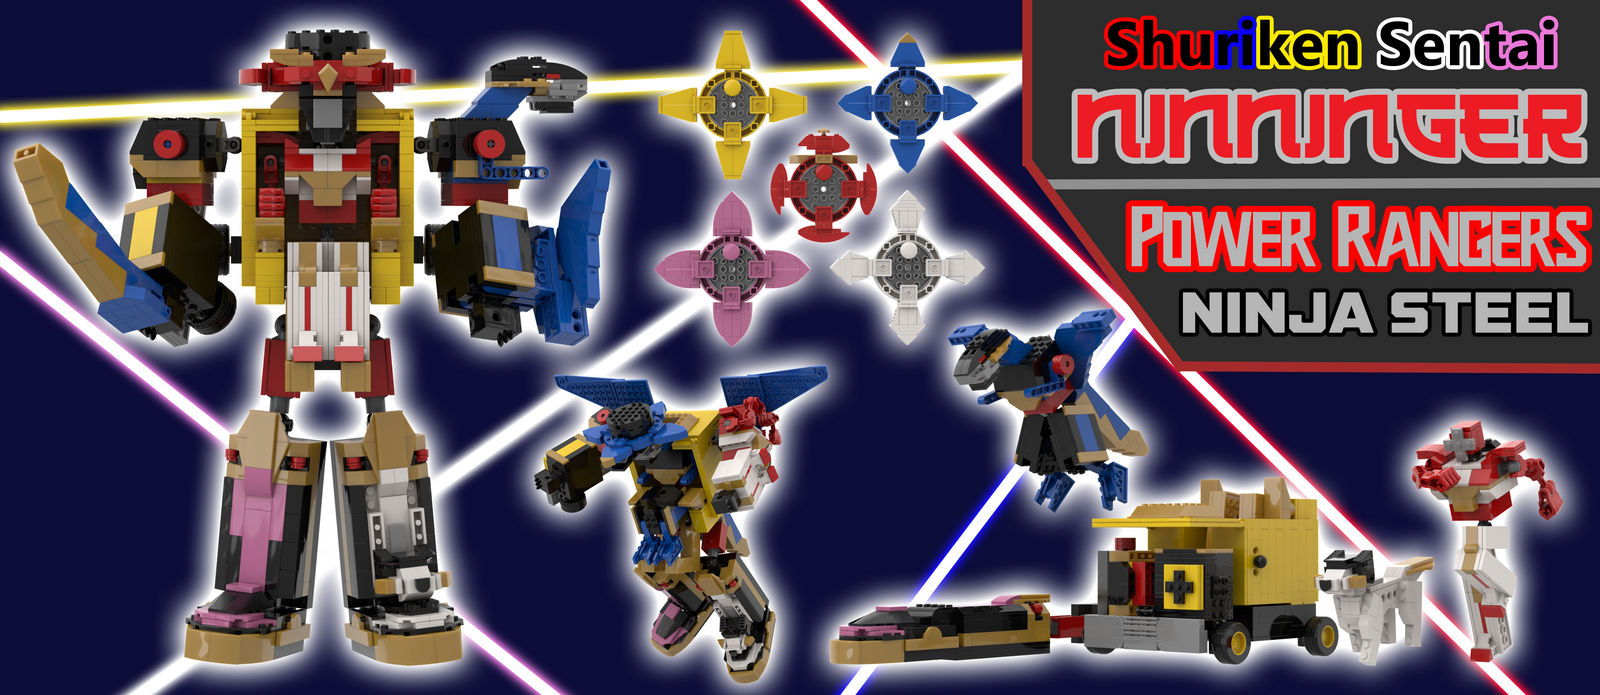 Ninja Steel Megazord - Power Rangers Ninja Steel